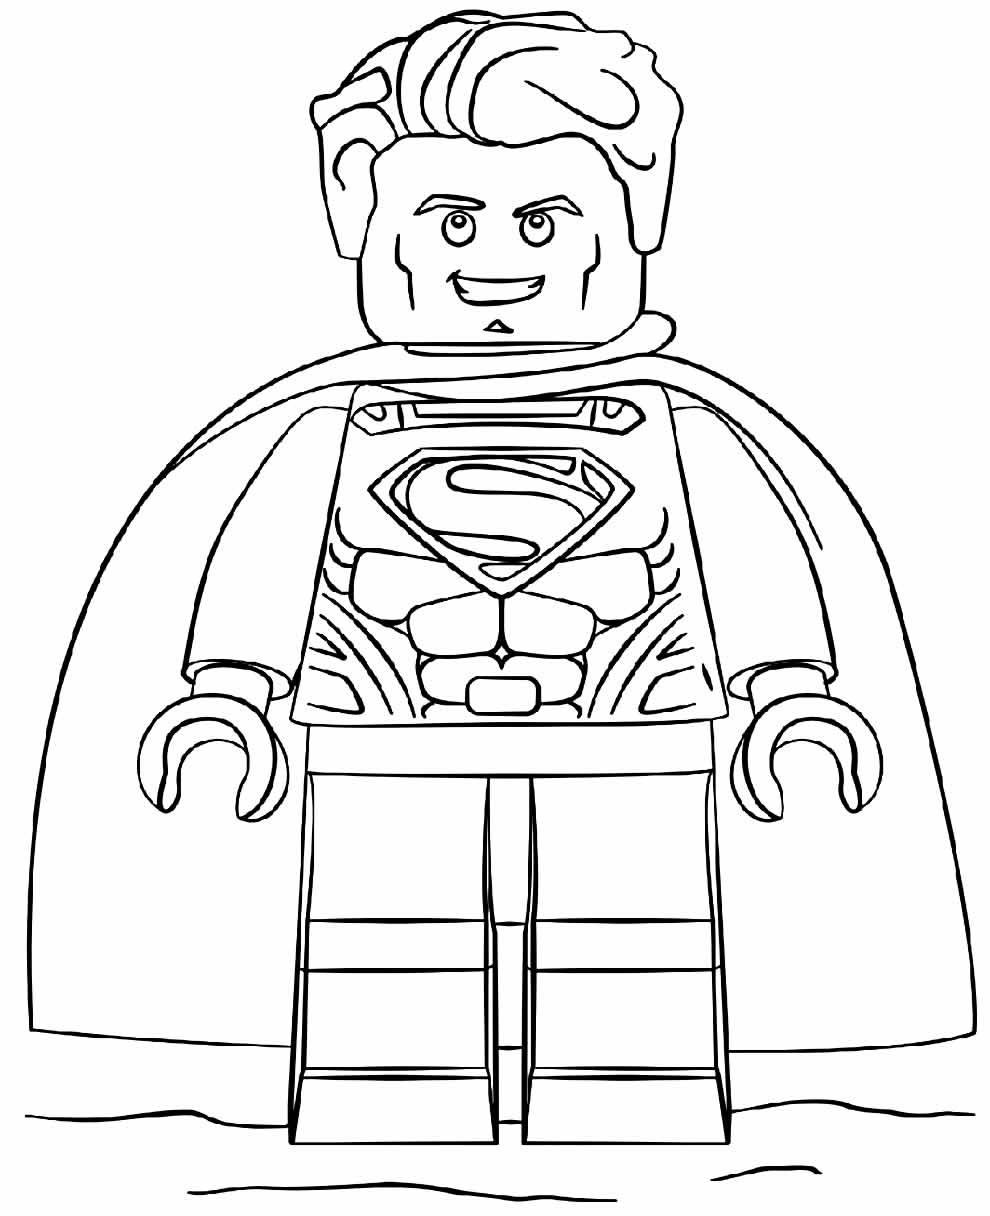 Imagem do Lego Super Homem para pintar